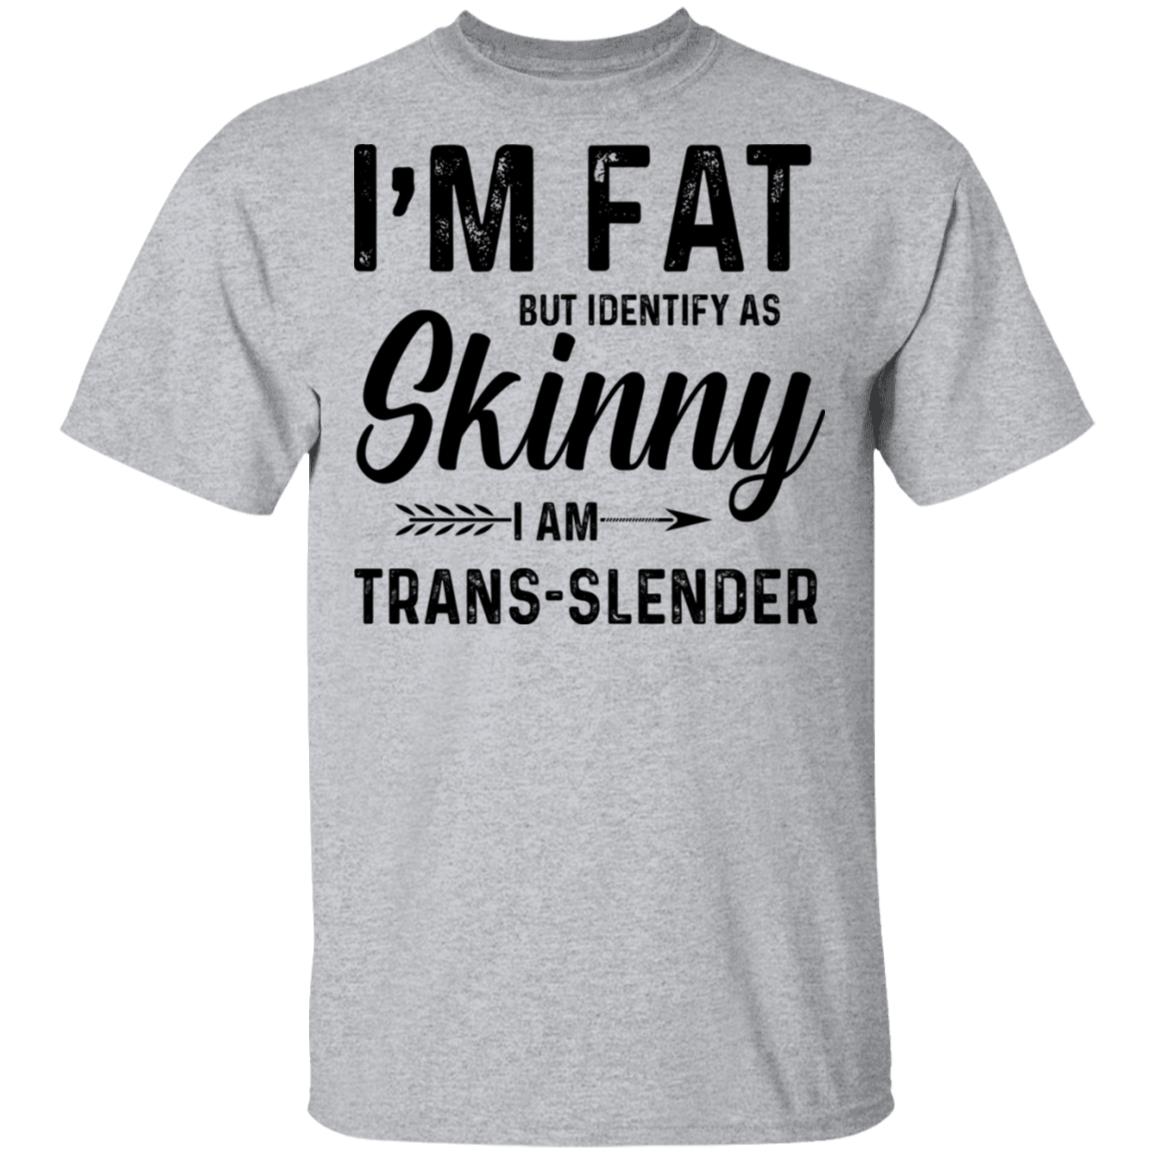 Slender T-Shirts for Sale